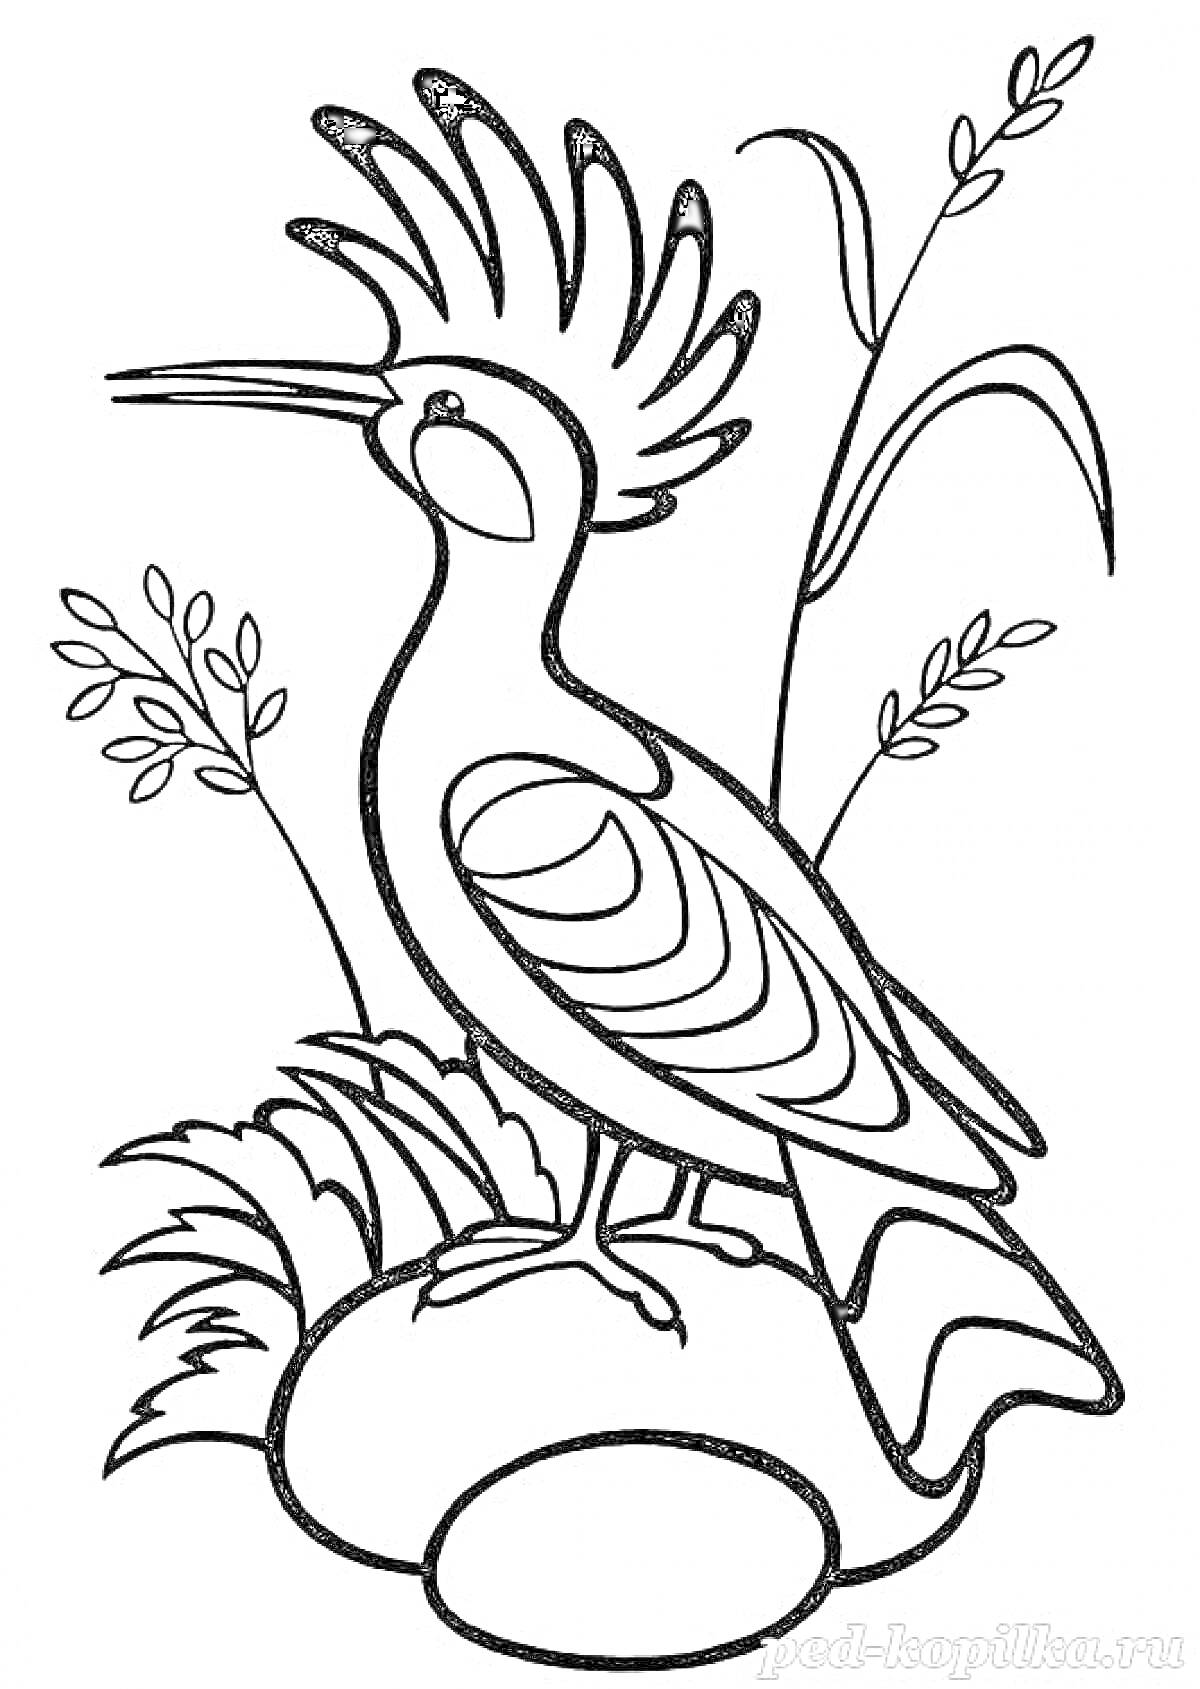 Раскраска Птица с хохолком на камне среди травы